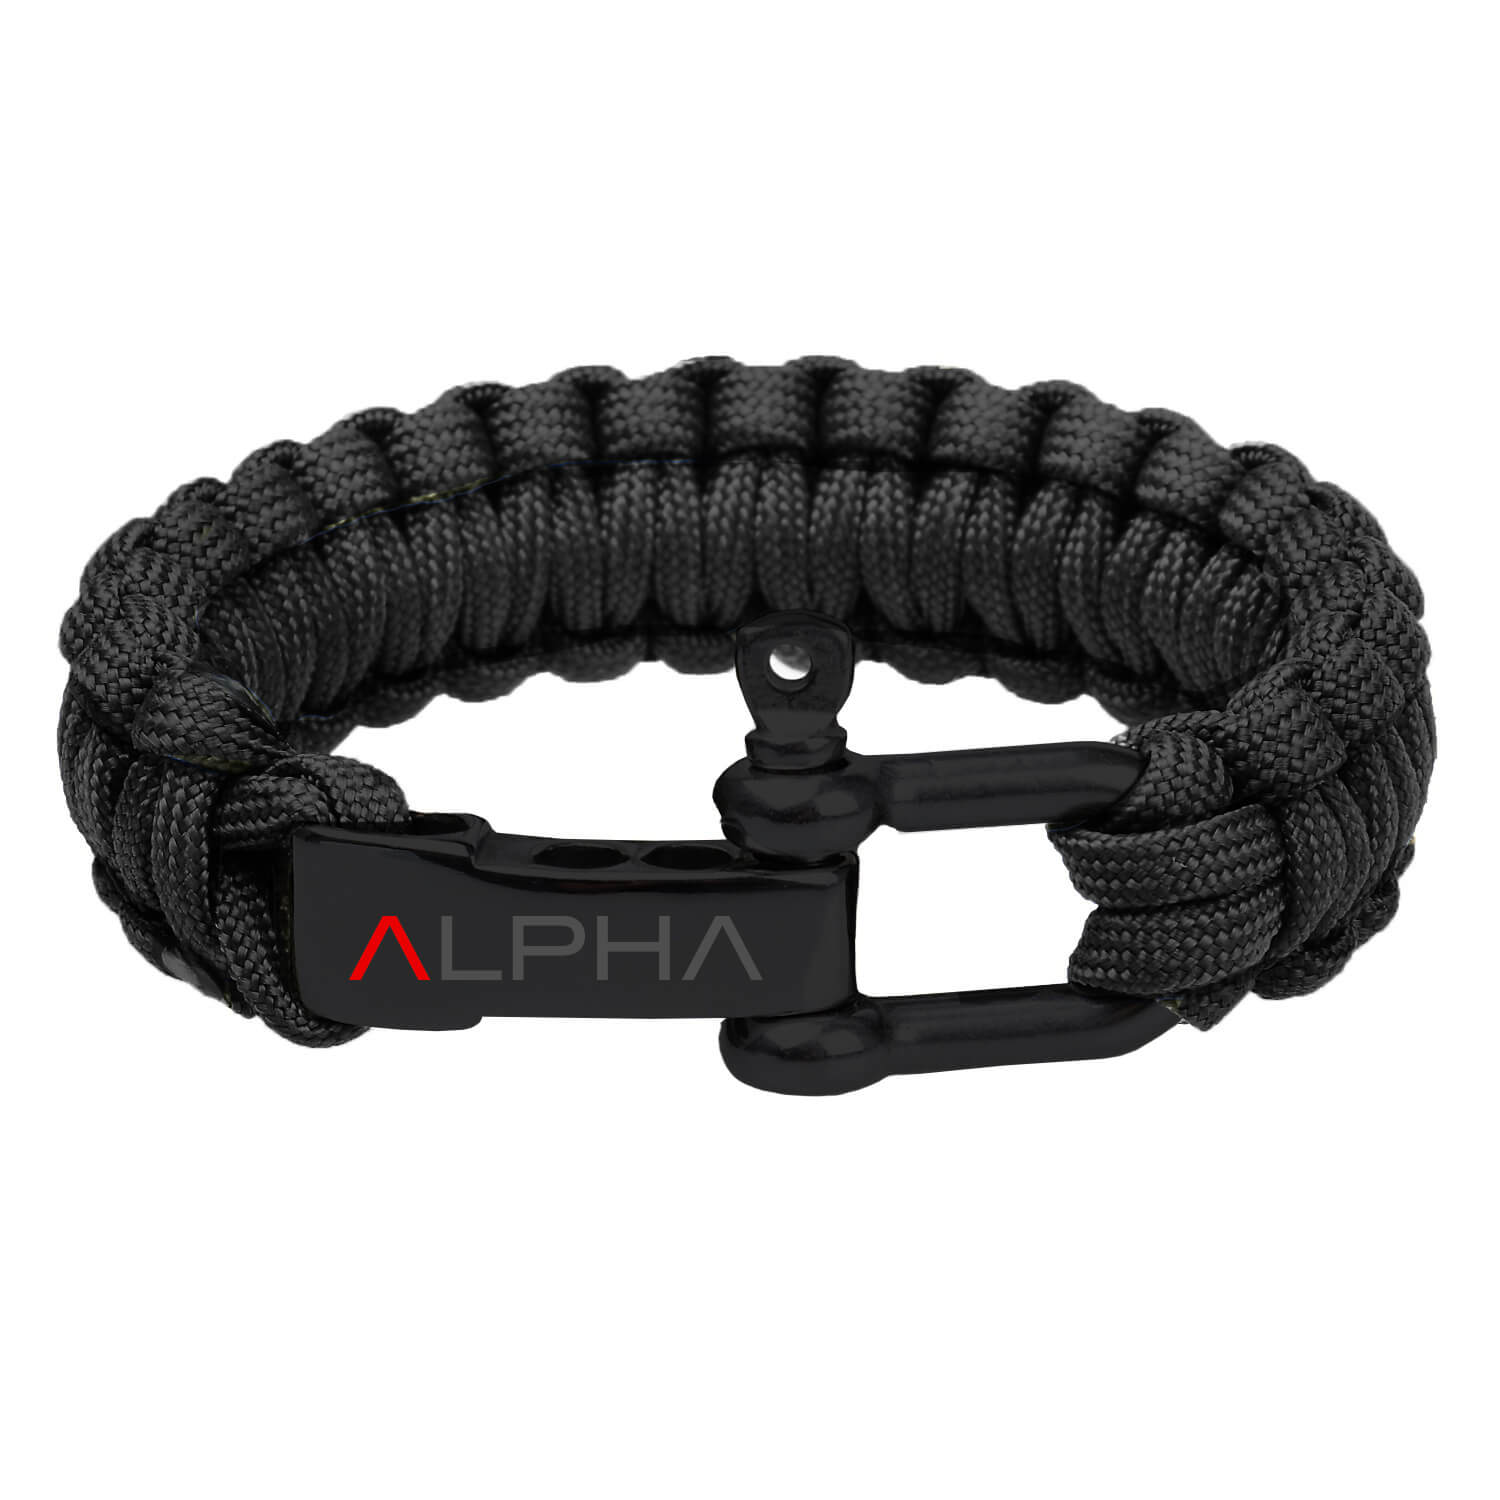 10 Pcs Paracord Bracelet Buckles Black Adjustable U Buckle Clip for Outdoor  Survival Bracelet Wrist Strap U Shackles